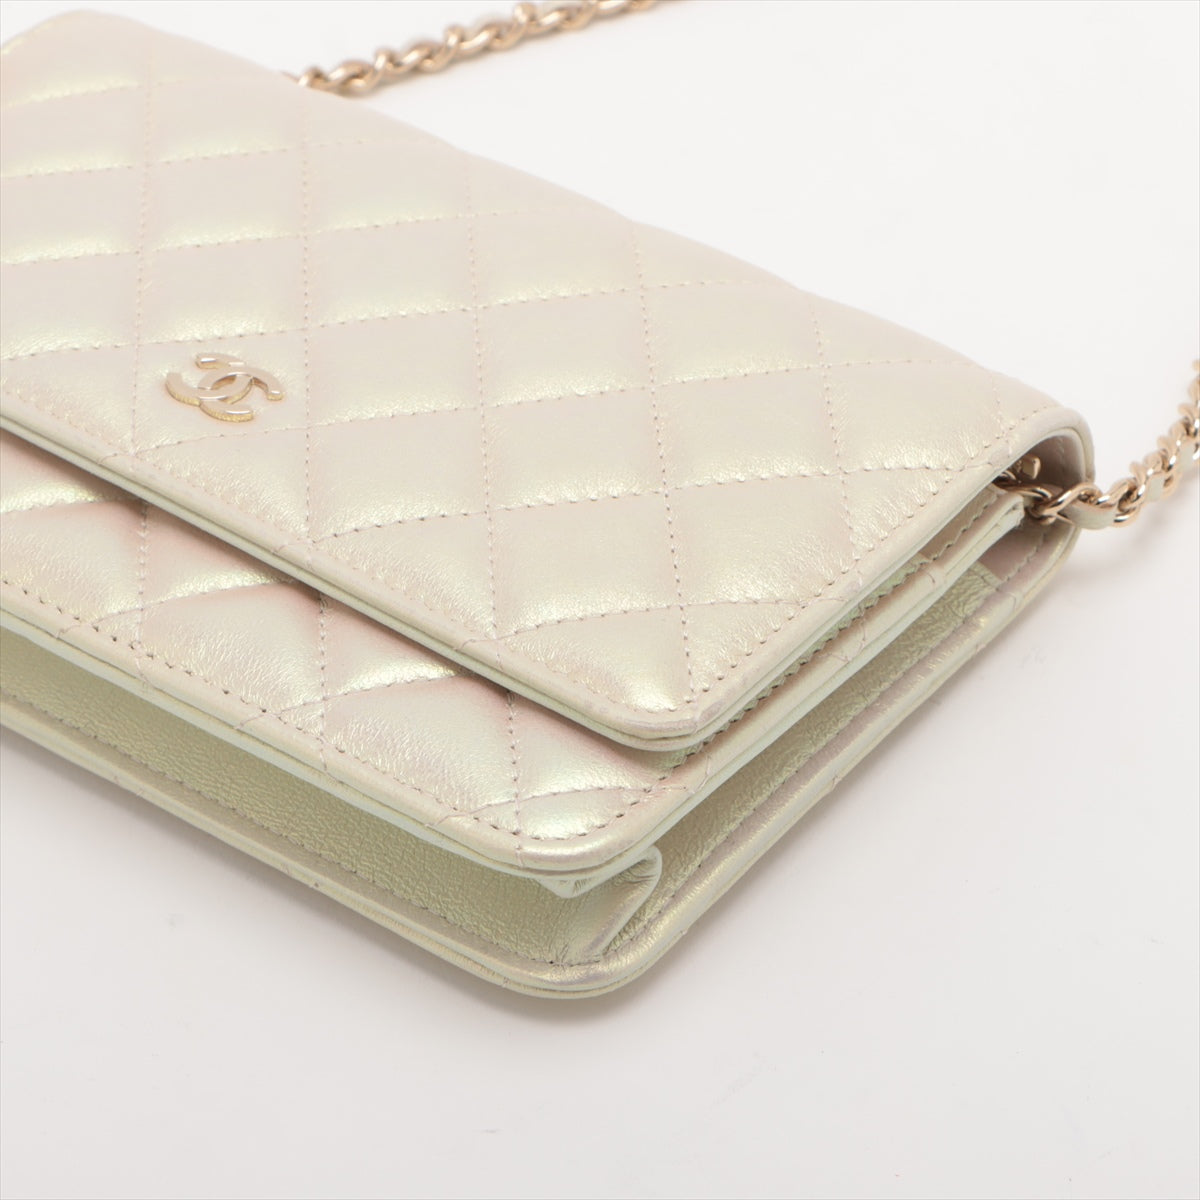 Chanel Matelasse Lambskin Chain wallet Pearl Gold Metal fittings 30